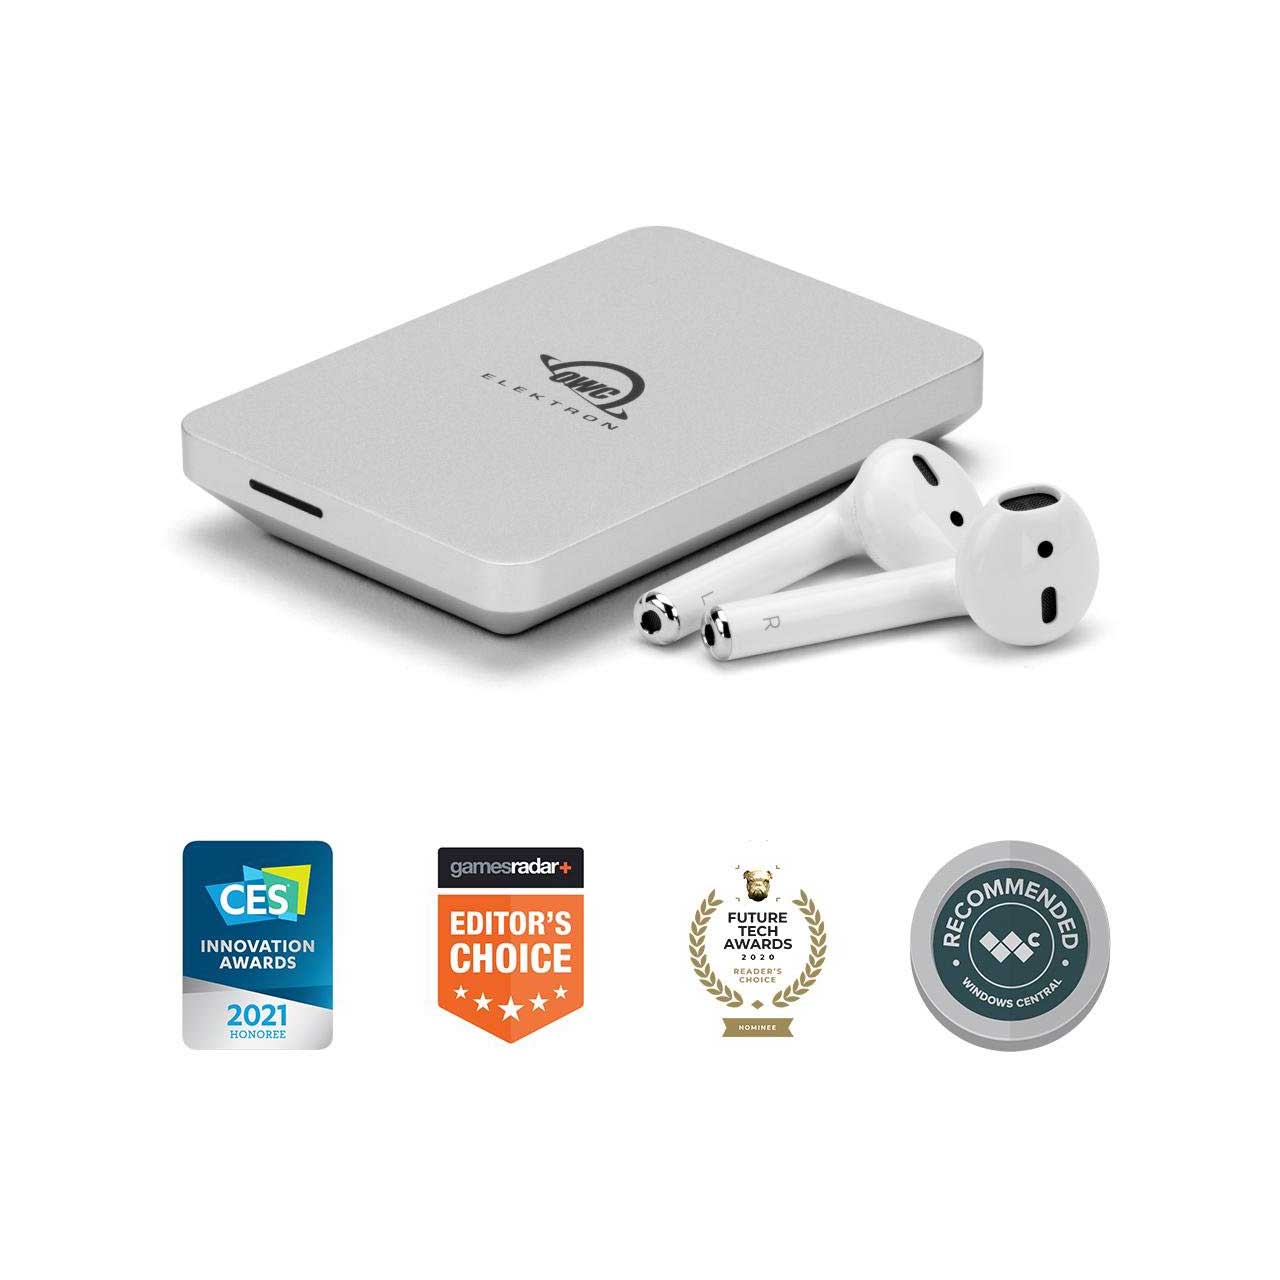 OWC ENVPK01 Envoy Pro Elektron USB-C Portable NVMe Solid-State Drive - 1.0 TB